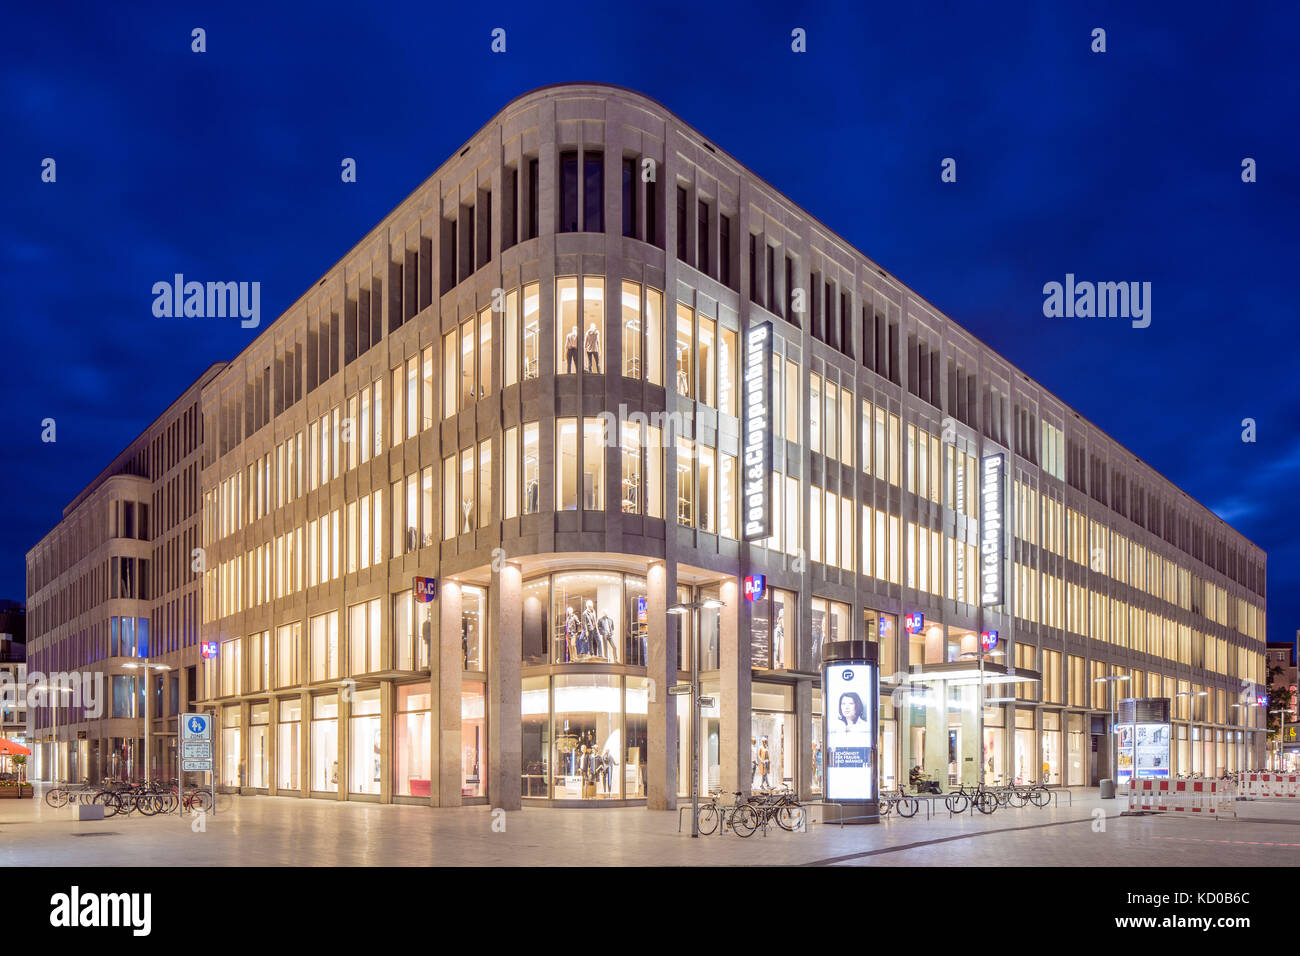 Kröpcke-Centre, bureau et bâtiment d'affaires, centre-ville, scène nocturne, Hanovre, Basse-Saxe, Allemagne Banque D'Images